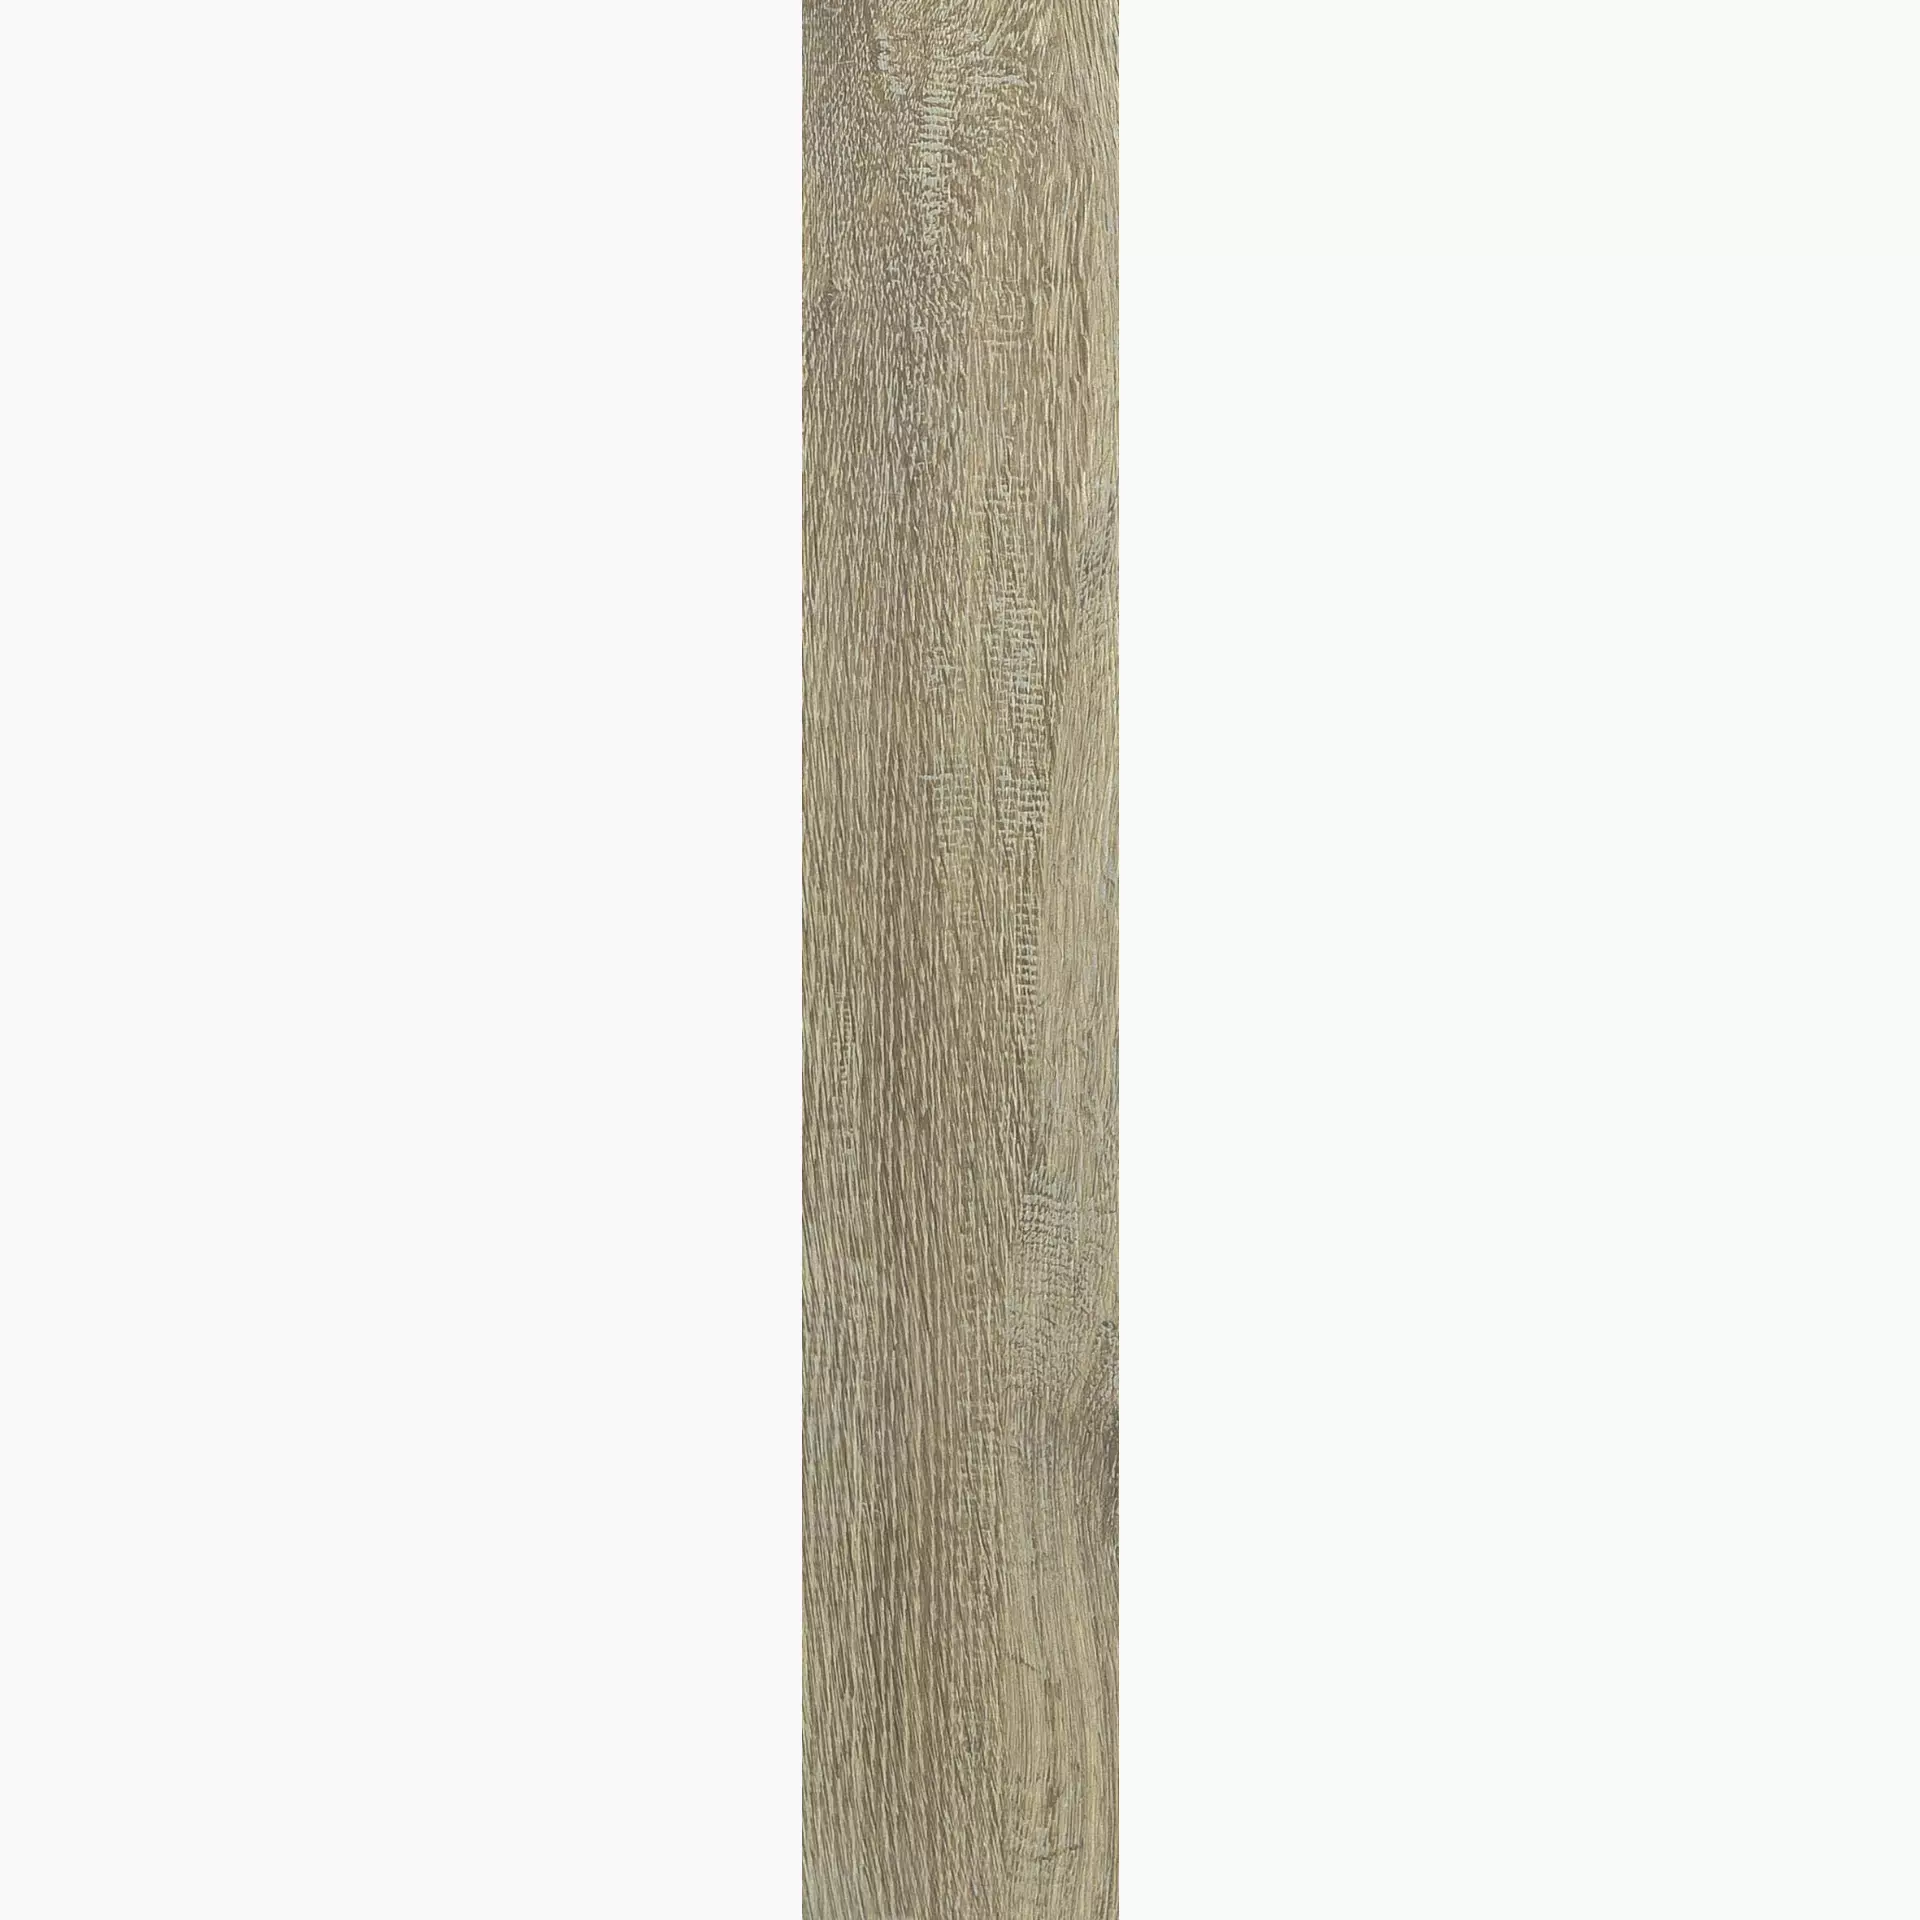 Florim Planches De Rex Miele Naturale – Matt Miele 755609 matt natur 20x120cm rektifiziert 9mm